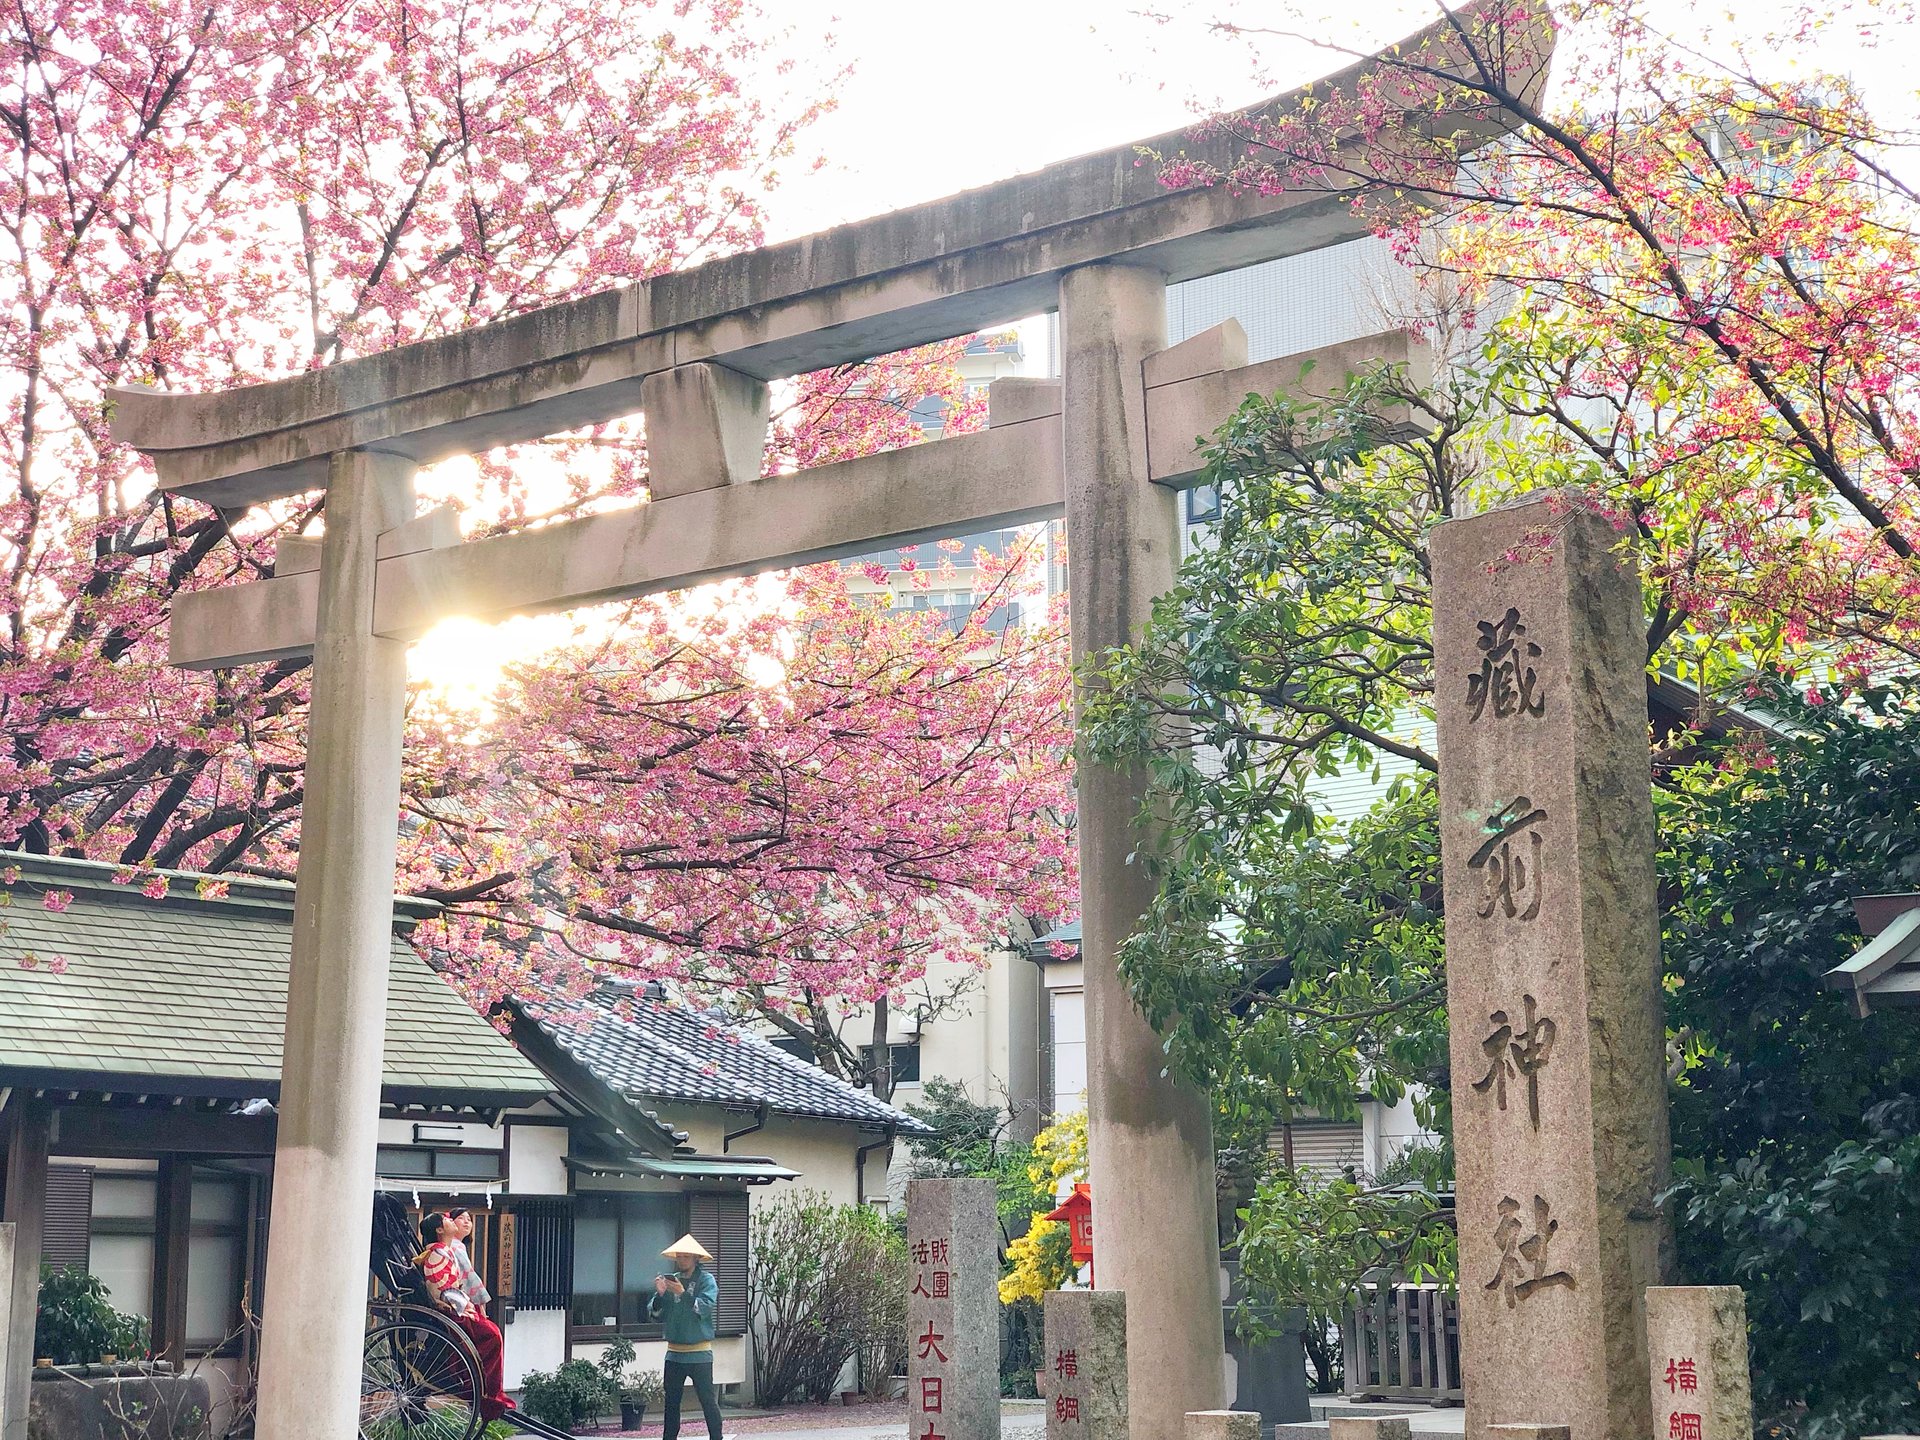 桜見るなら蔵前神社♡おしゃれカフェエリアでお花見‼︎帰りはペリカンカフェへ